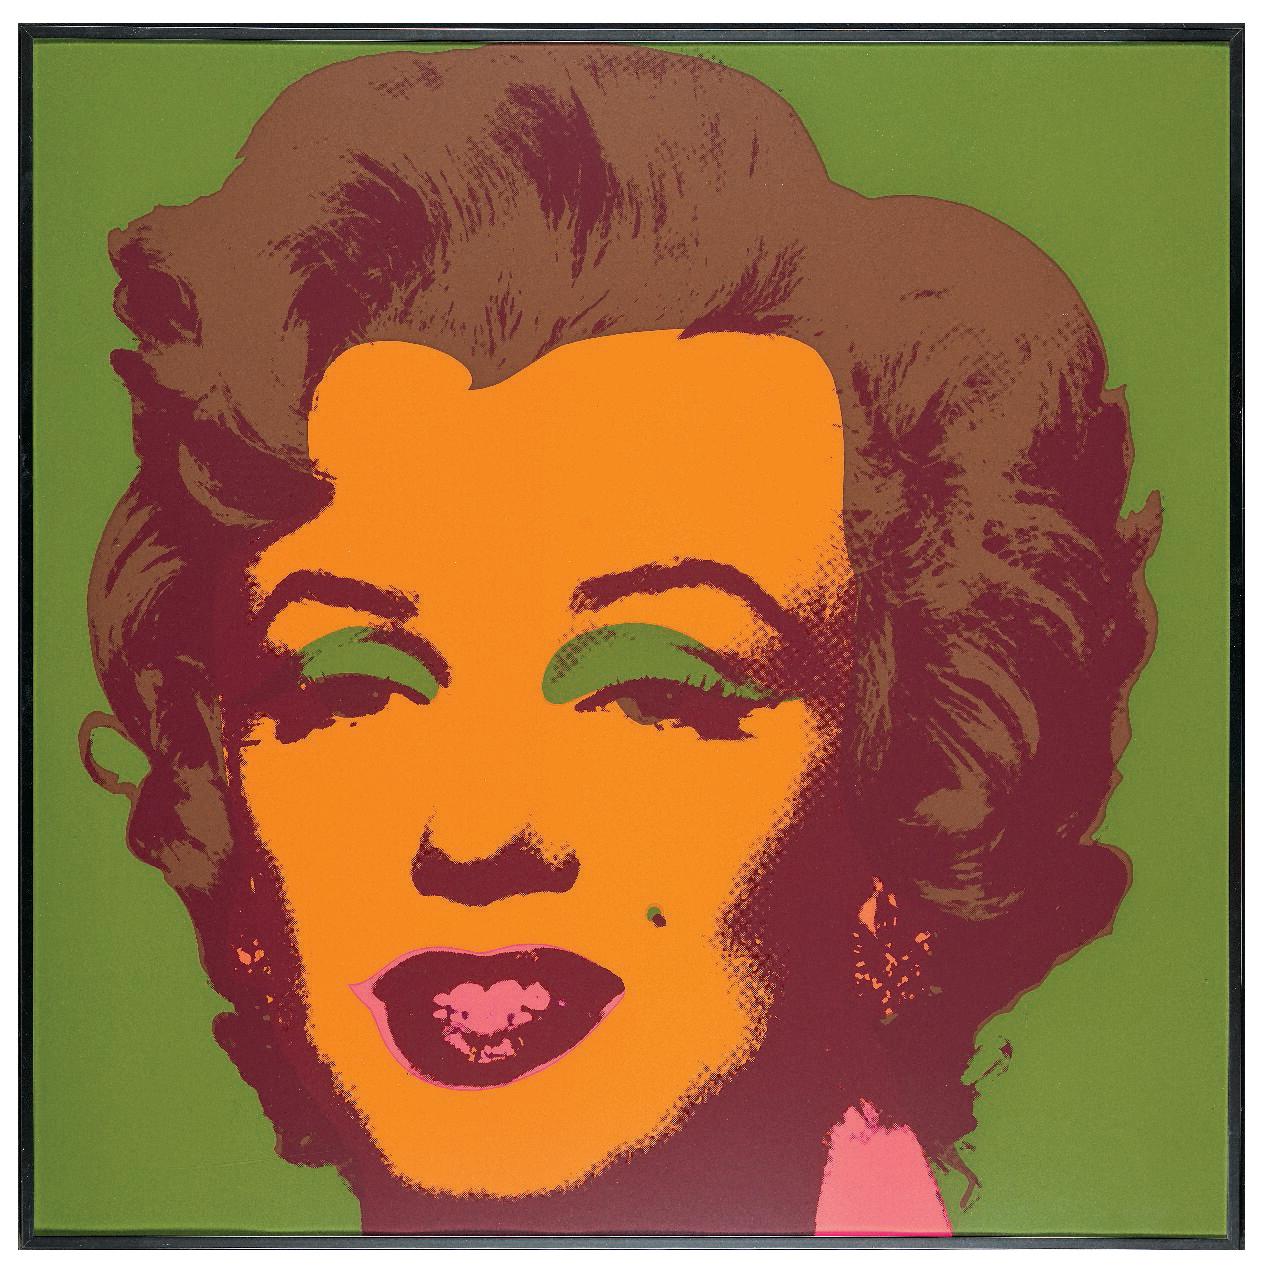 Andy Warhol, Orange Marilyn (1962)